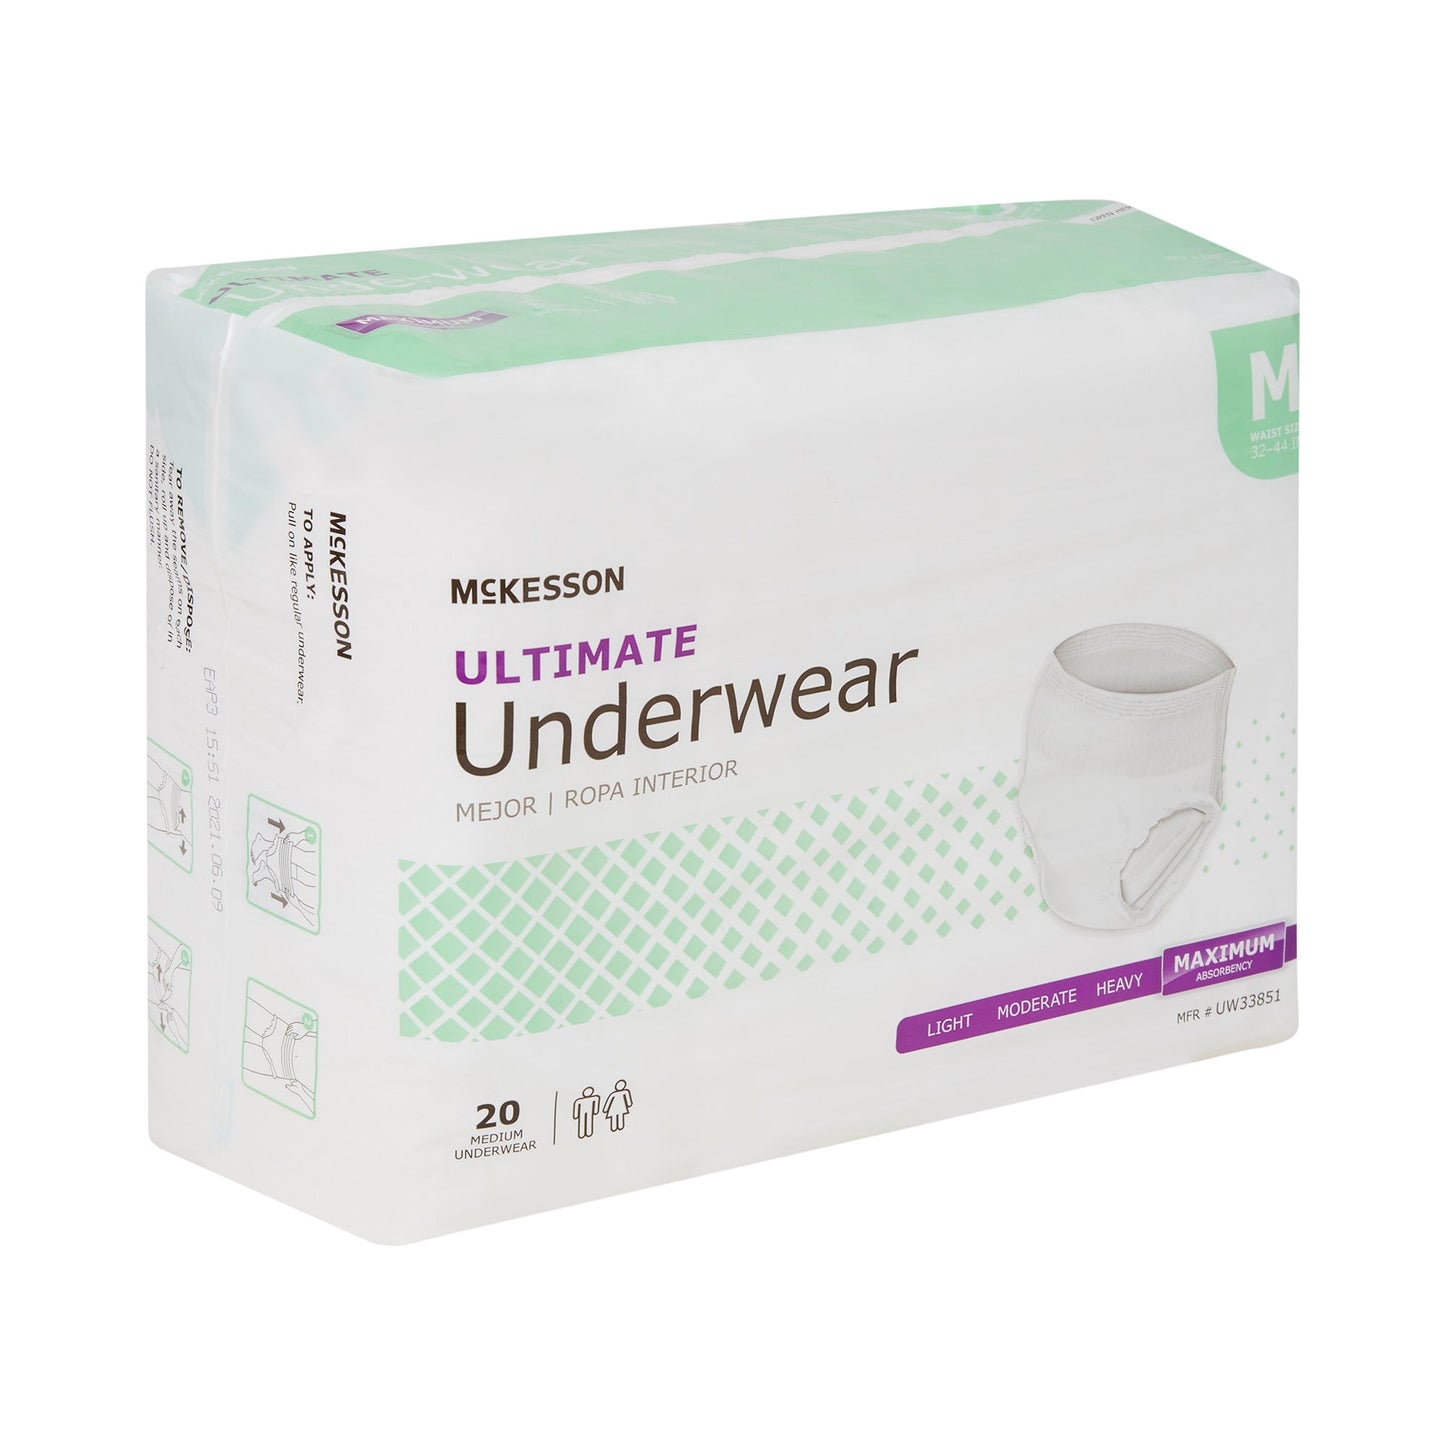 McKesson Ultimate Maximum Absorbent Underwear, Medium, 20 ct